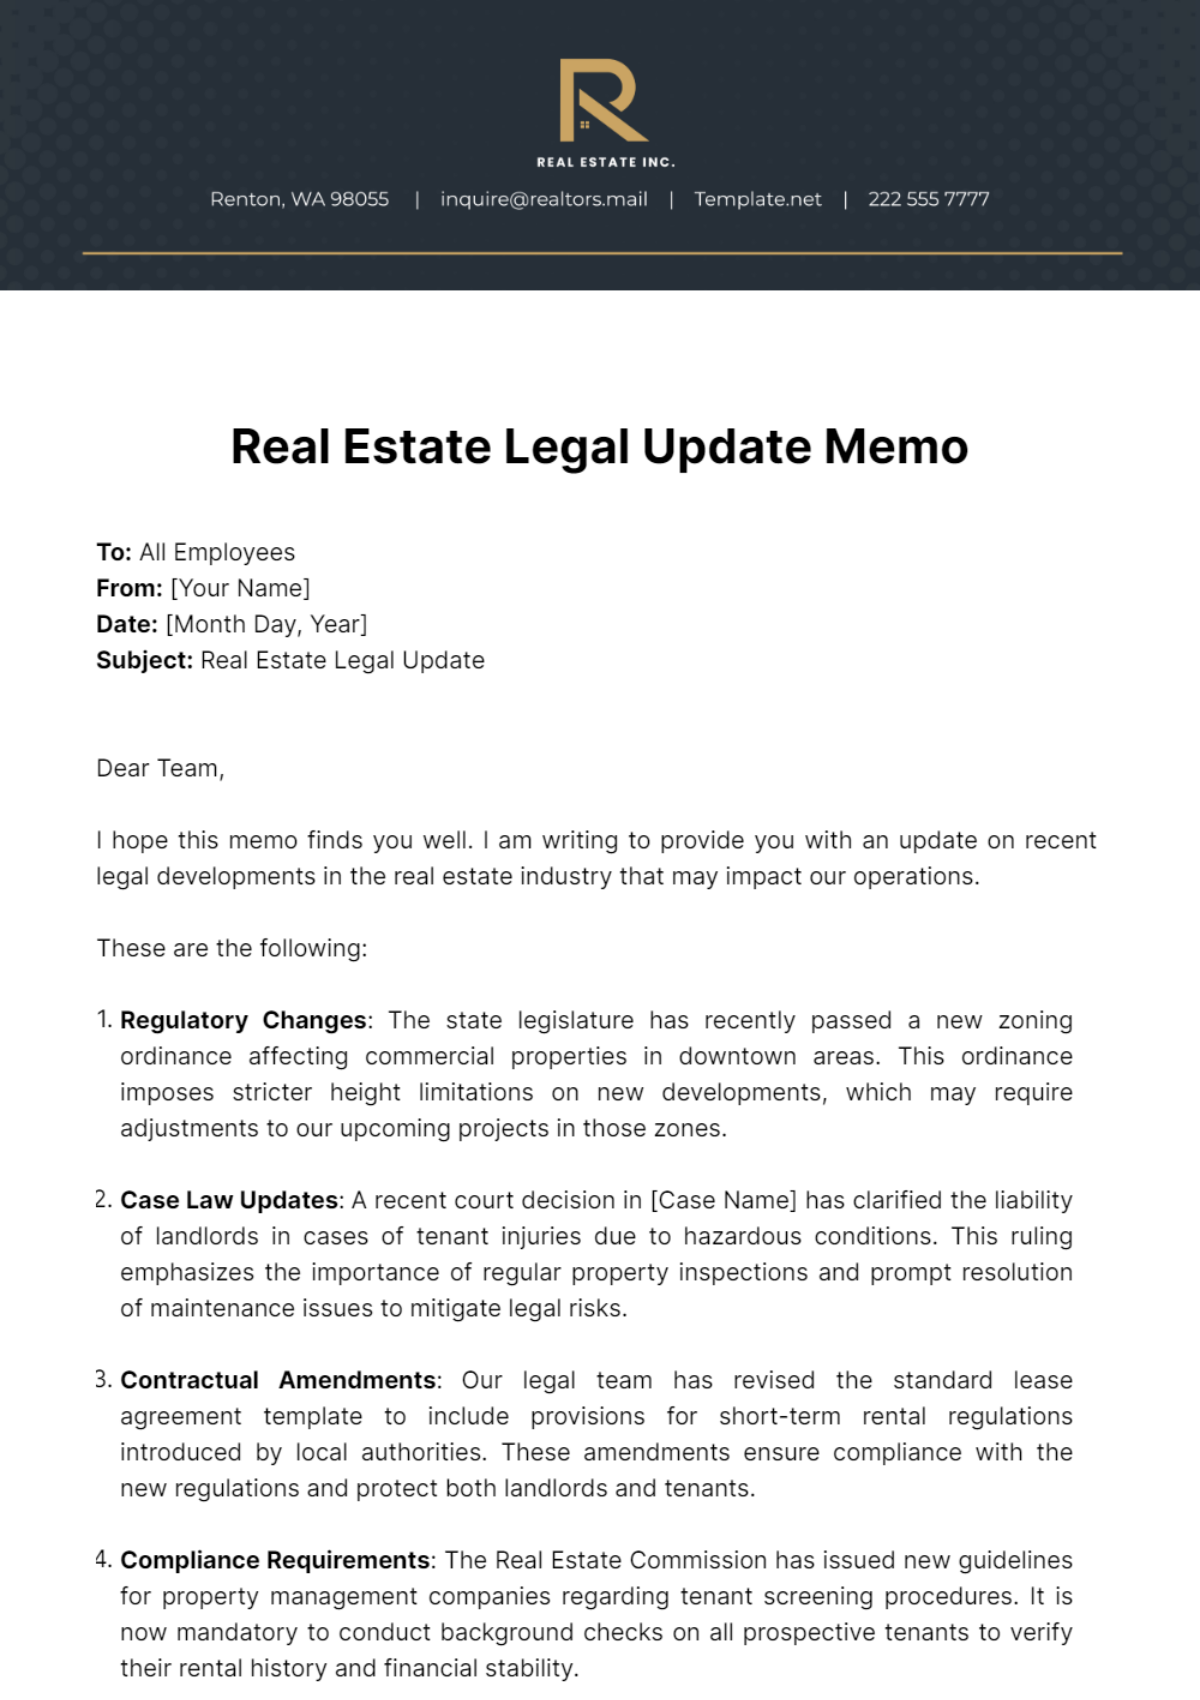 Real Estate Legal Update Memo Template